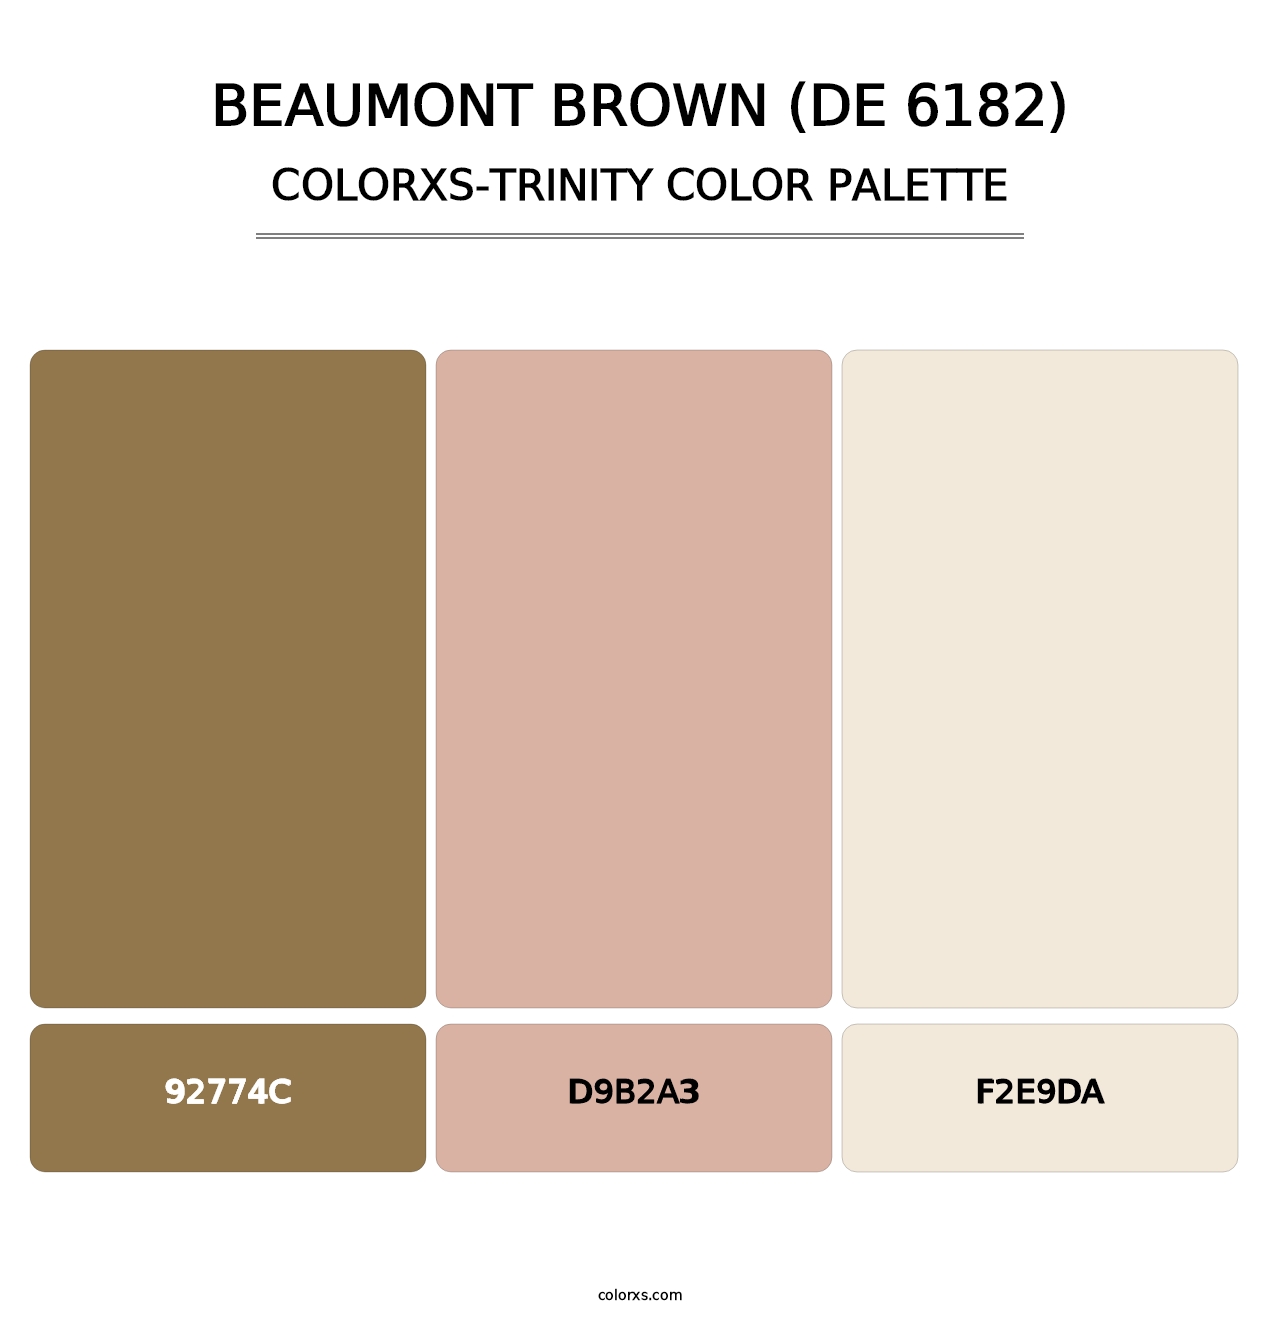 Beaumont Brown (DE 6182) - Colorxs Trinity Palette